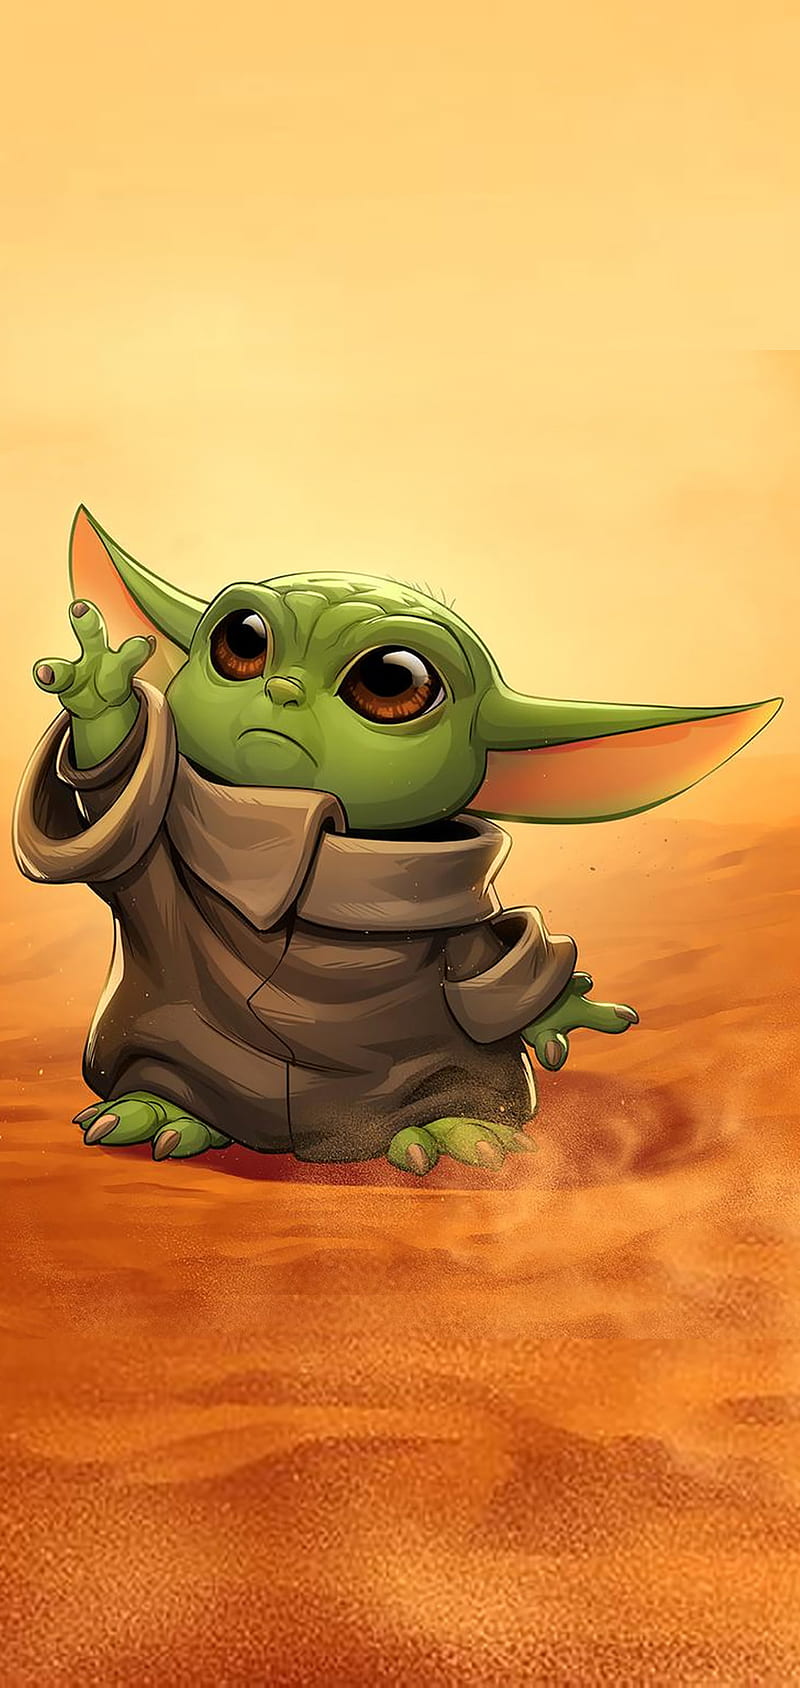 Baby Yoda là chủ đề hot nhất hiện nay với đáng yêu của mình. Hãy nhấp chuột và cùng đắm chìm trong những hình ảnh Baby Yoda đáng yêu, dễ thương.